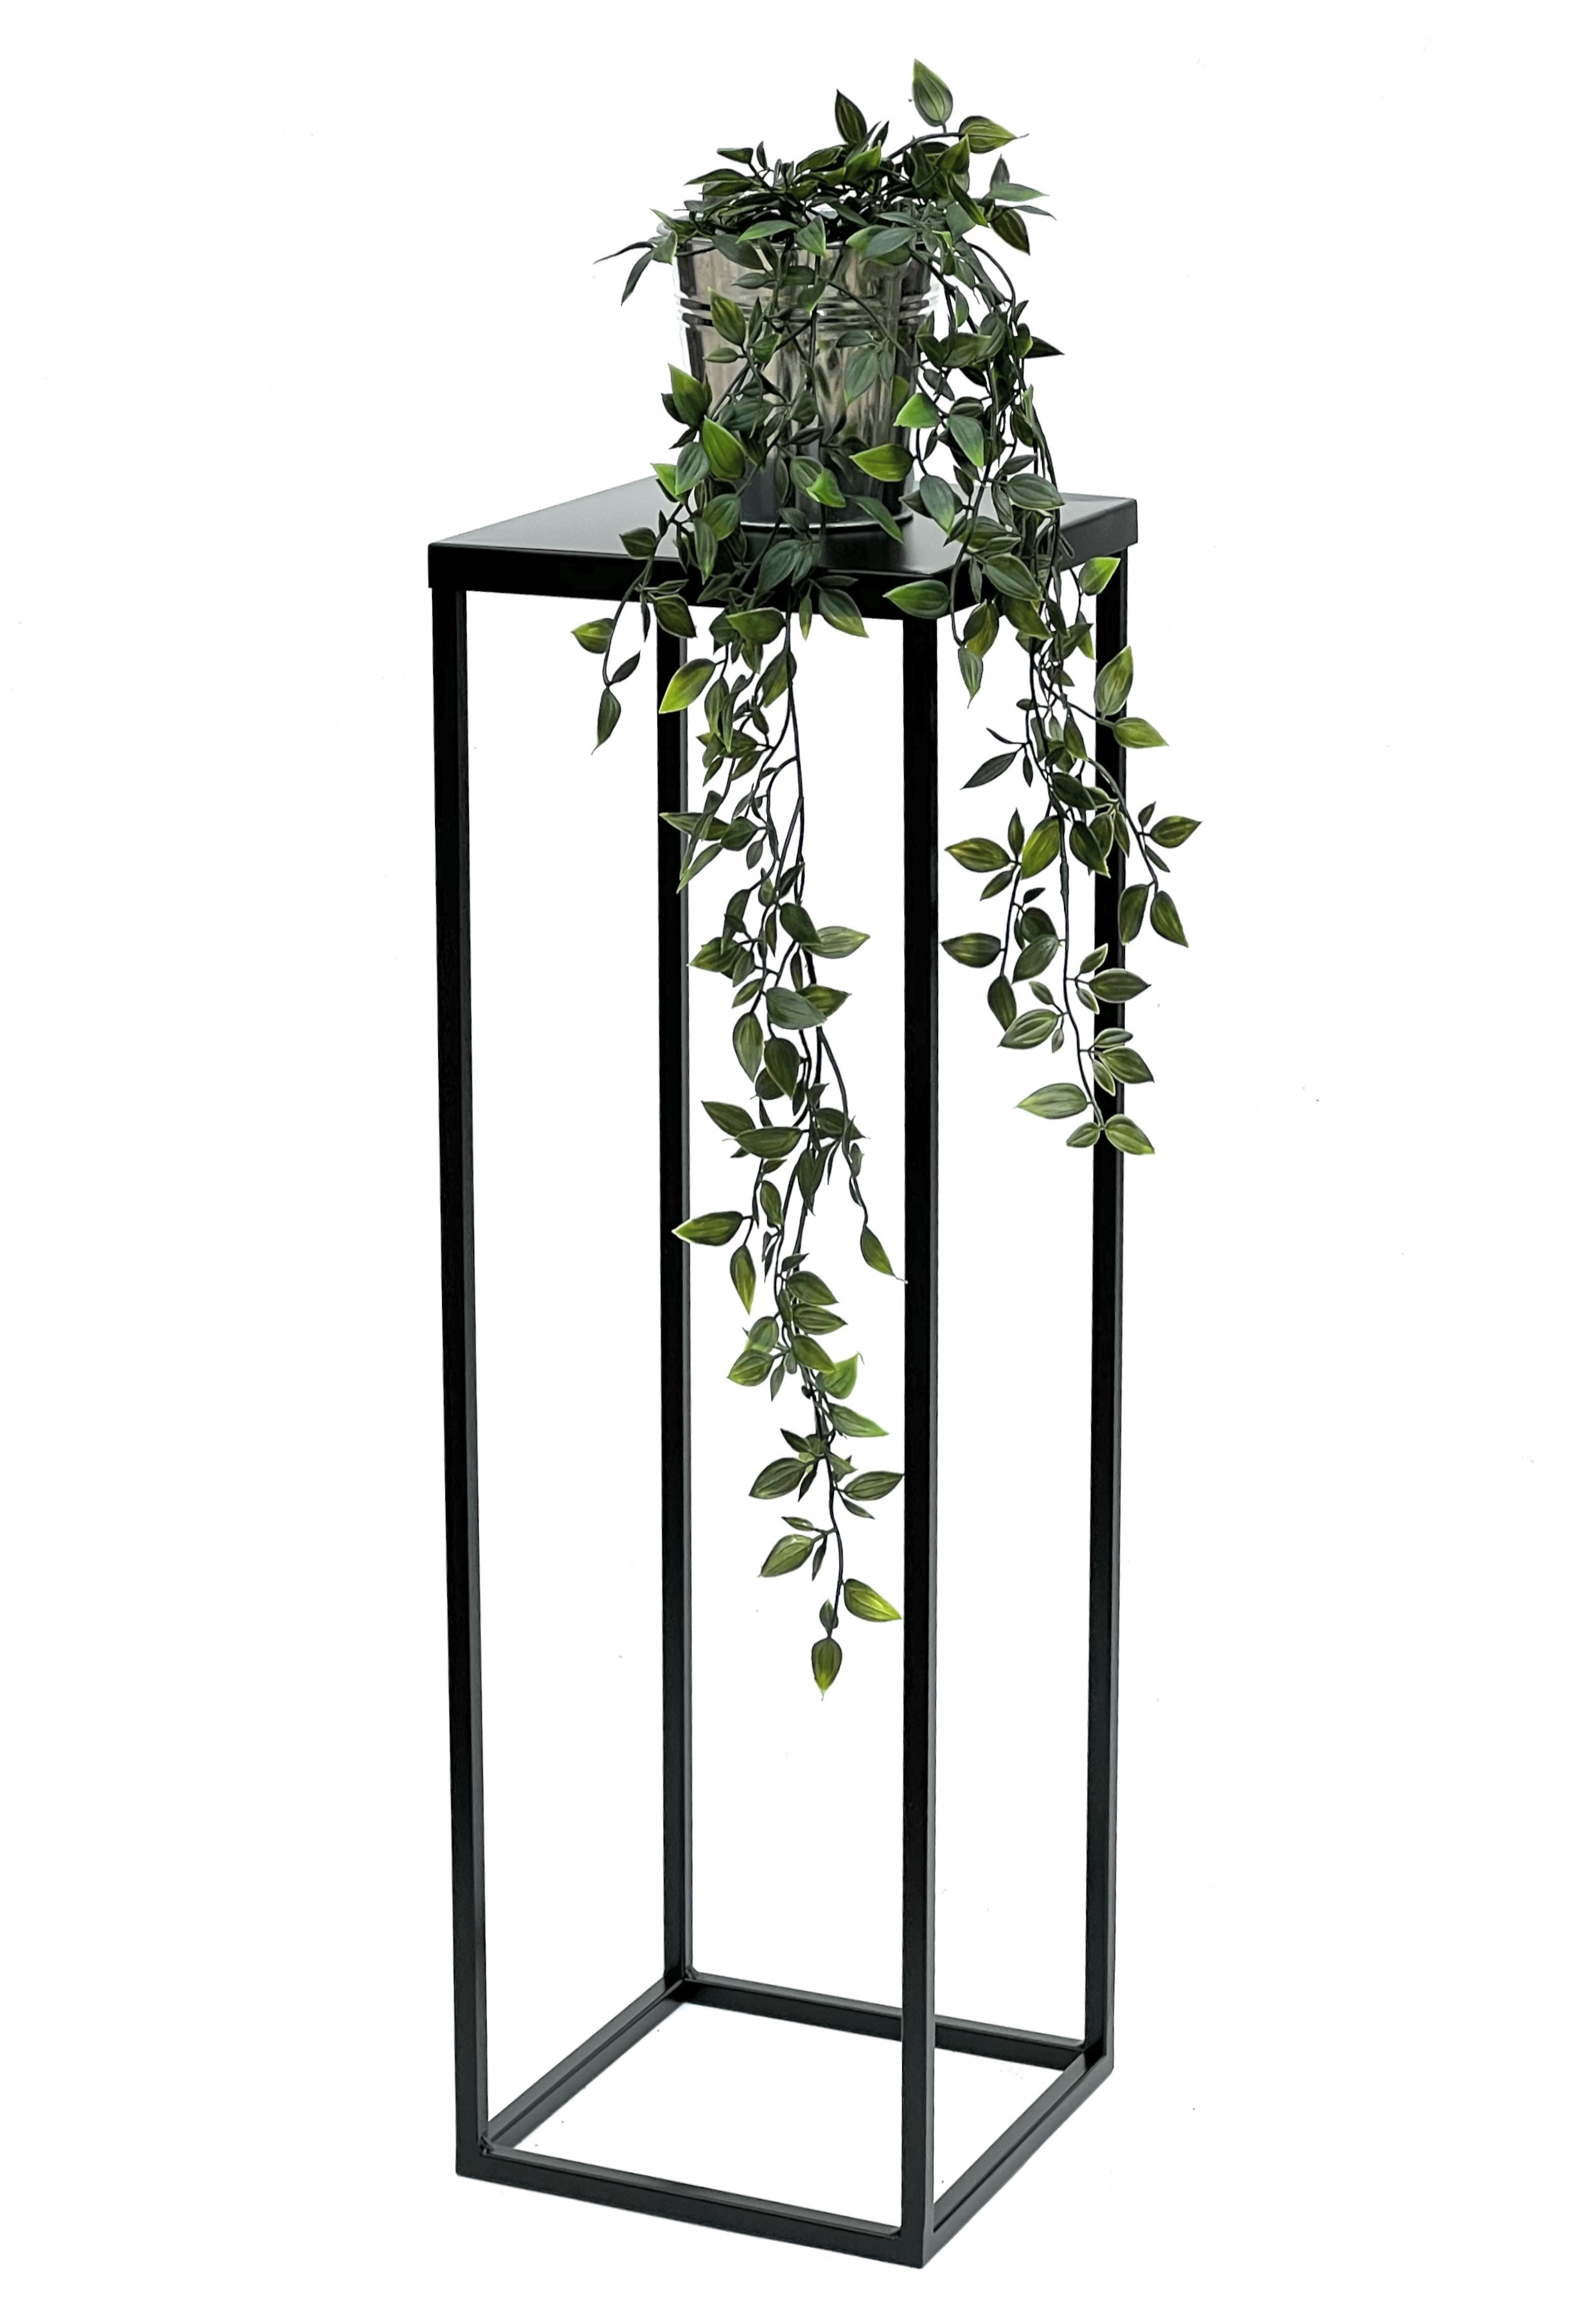 DanDiBo Blumenhocker Metall Schwarz 70 cm Eckig Blumenständer Beistelltisch  FRA-005 Blumensäule Modern Pflanzenständer Pflanzenhocker - DanDiBo-Ambiente